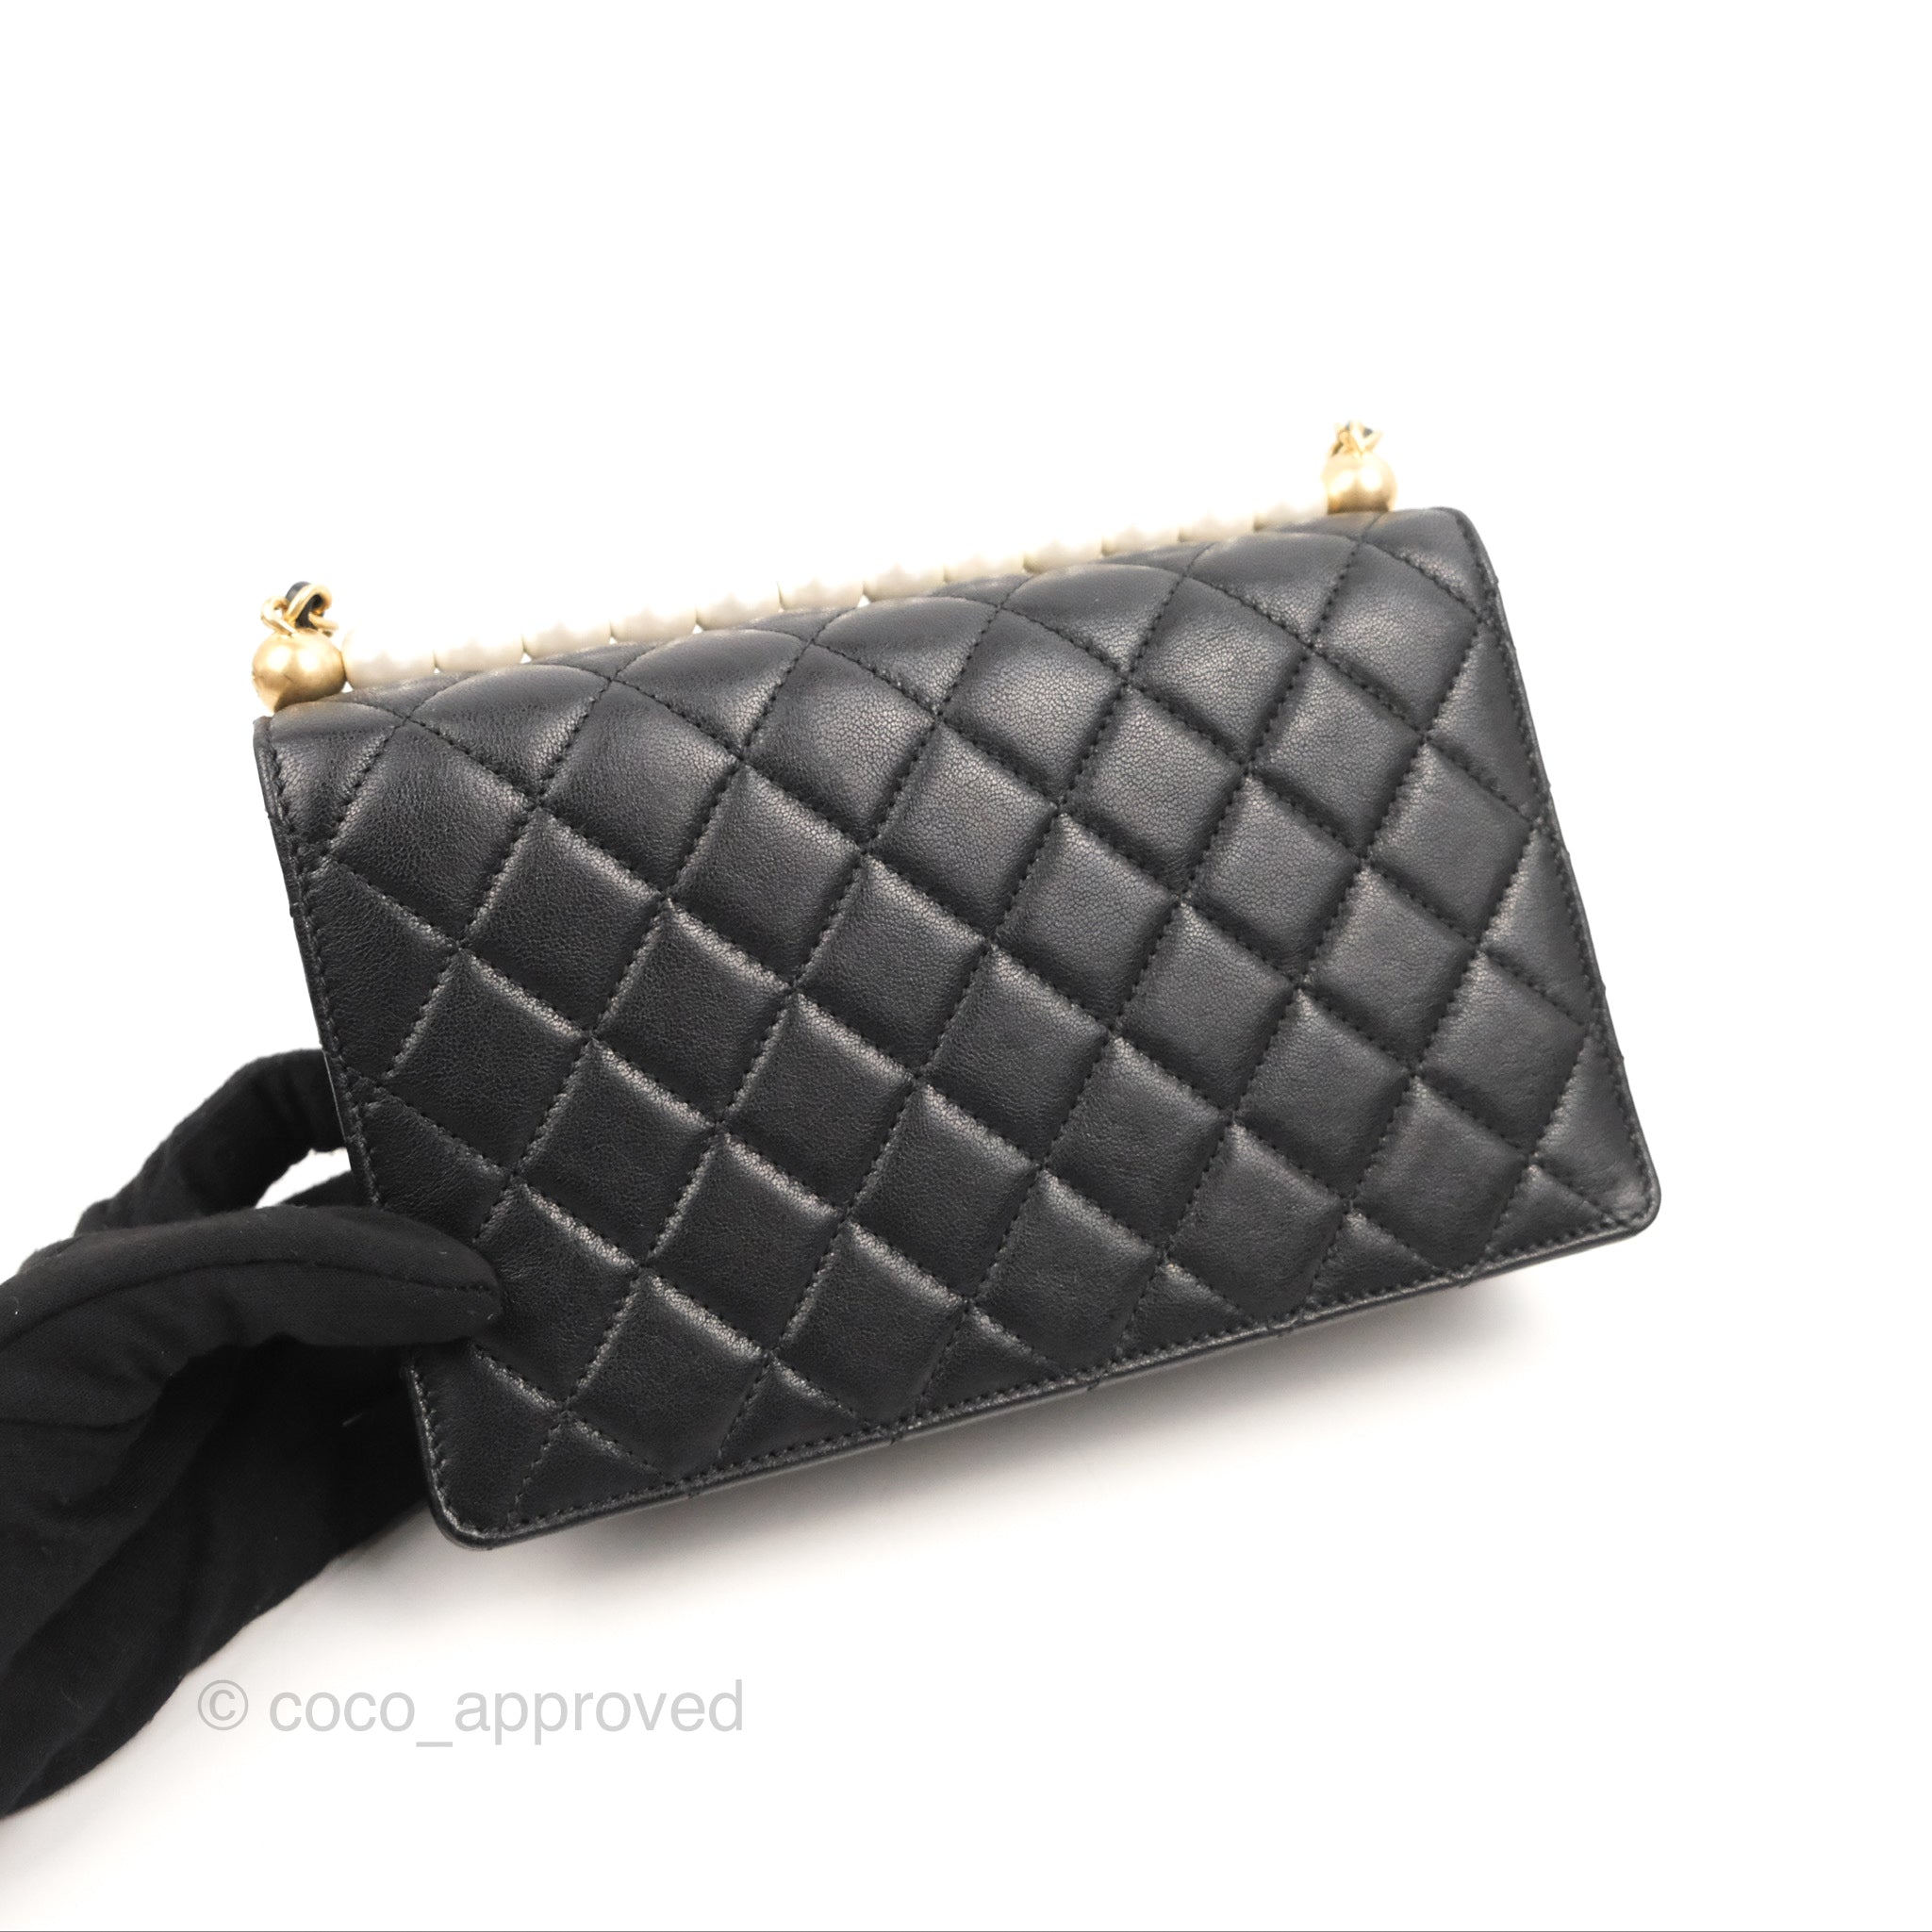 pearl chanel purse black